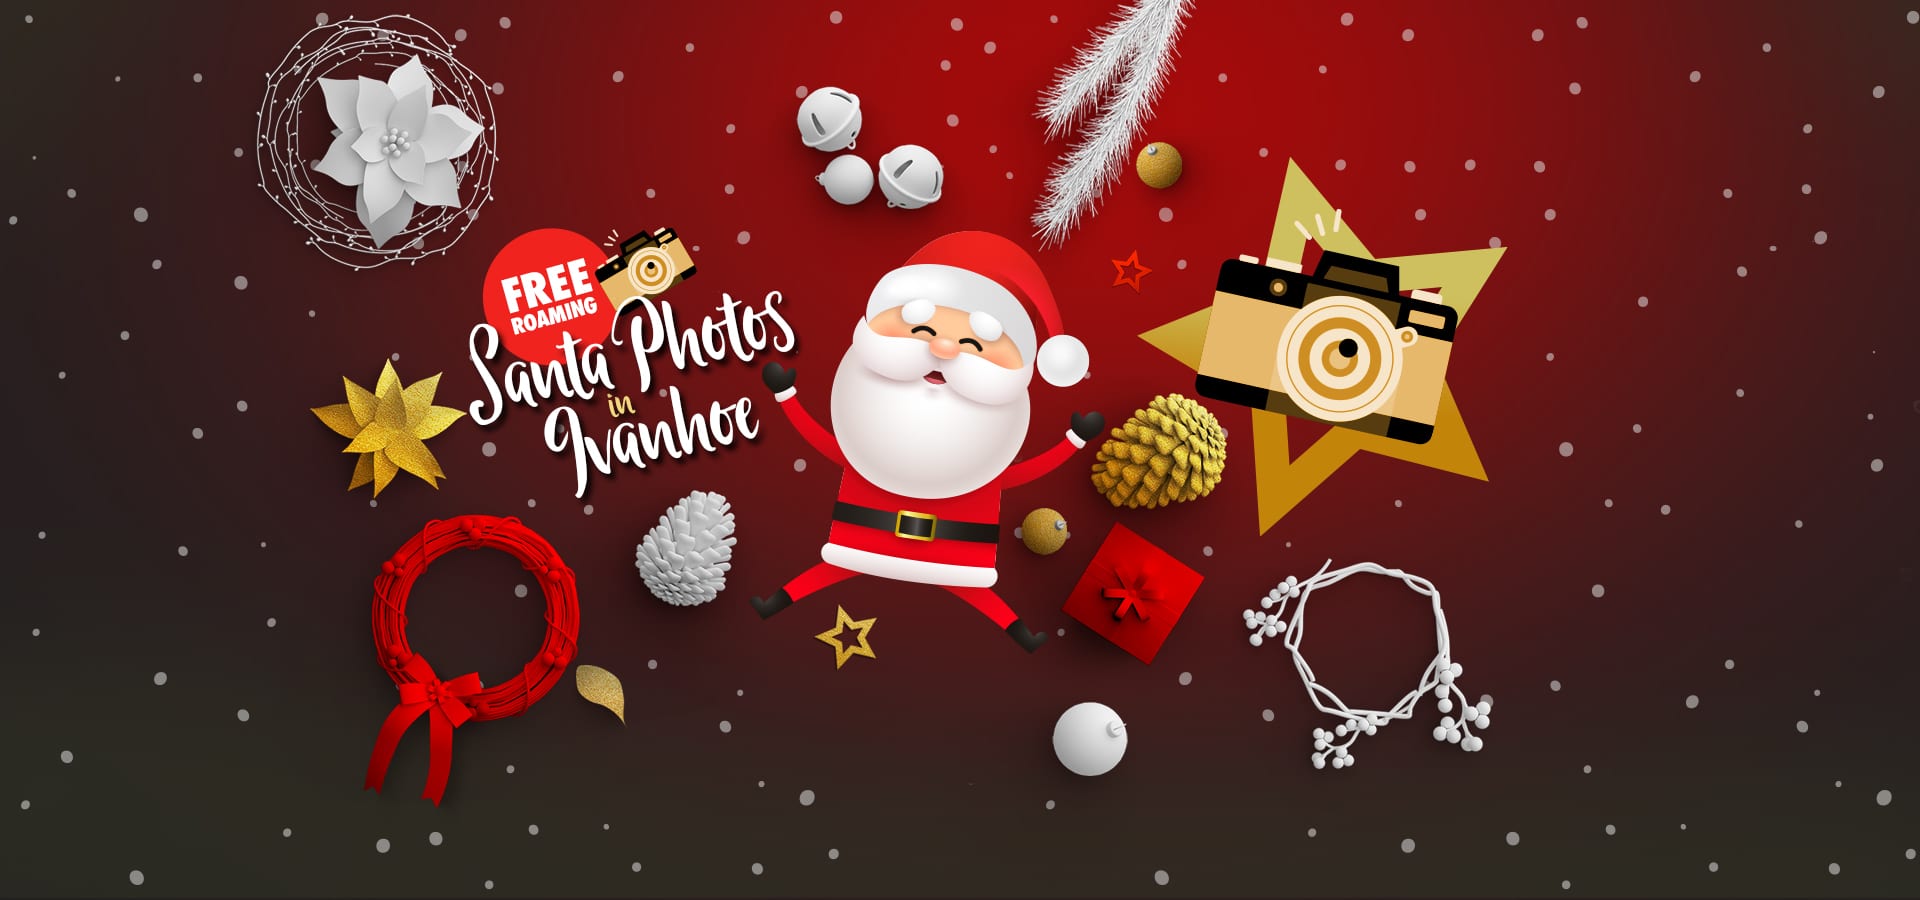 ITA-Christmas-2021-Santa Photos Home